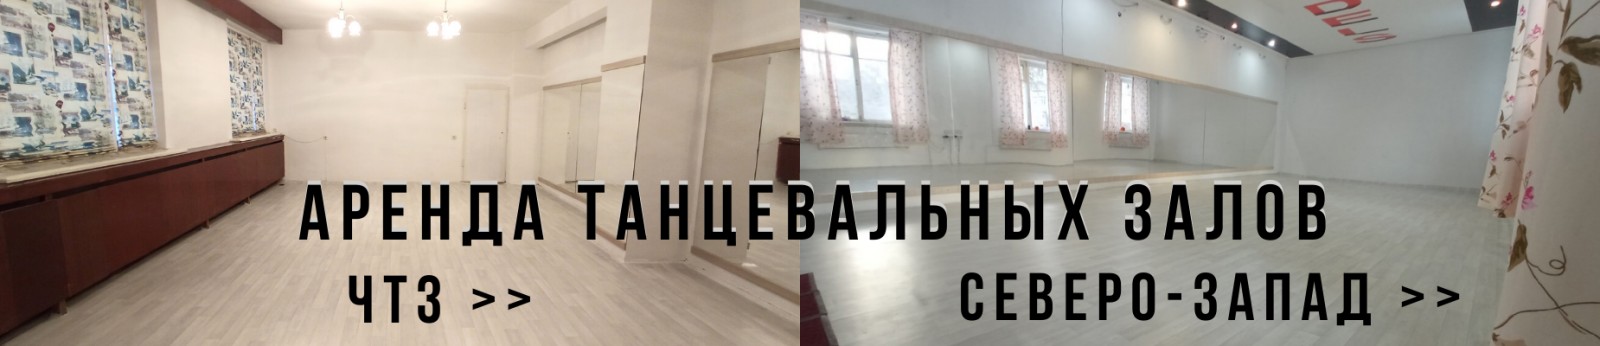 аренда-зала-почасовая-для-танцев-йоги-спортивных-танцевальных-гимнастики-северо-запад-челябинск